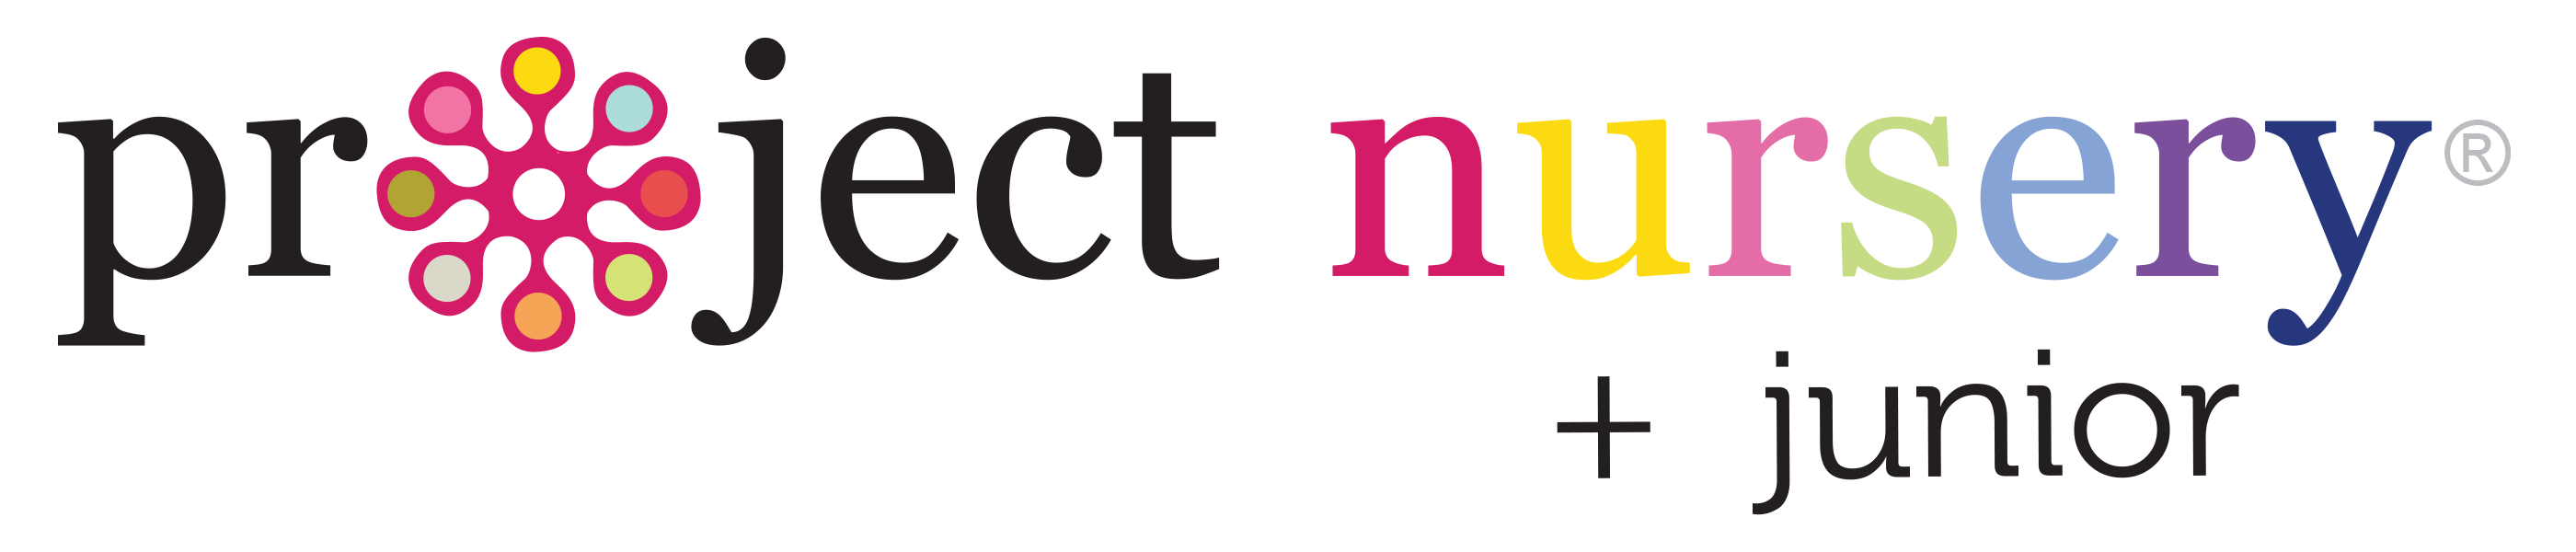 project nursery logo